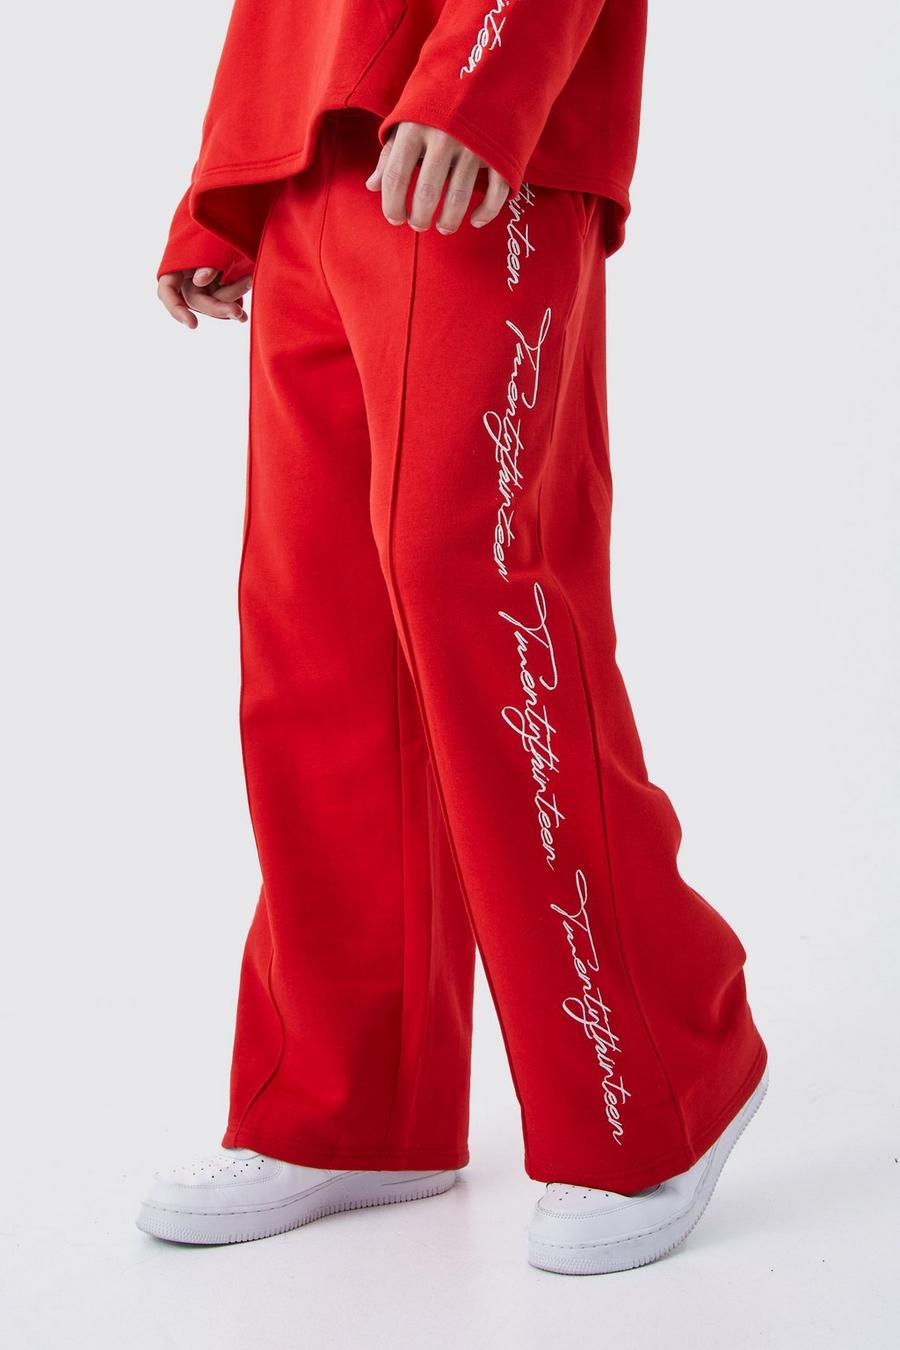 Pantaloni tuta a gamba ampia con scritta ricamata e fondo grezzo, Red